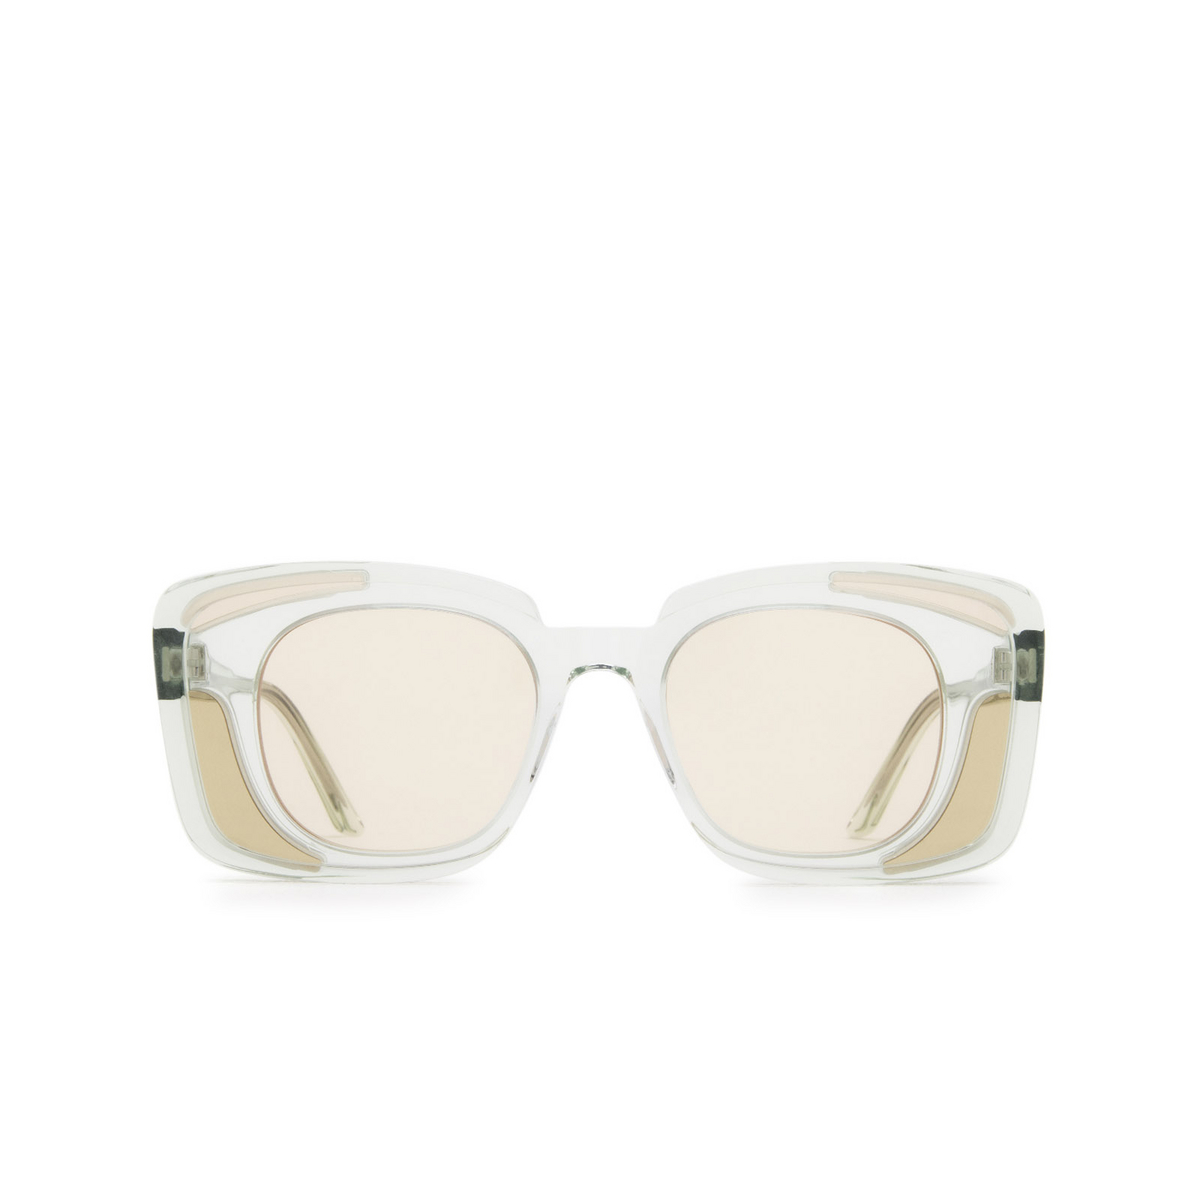 Kuboraum® Square Sunglasses: T7 color Mint Mt - front view.